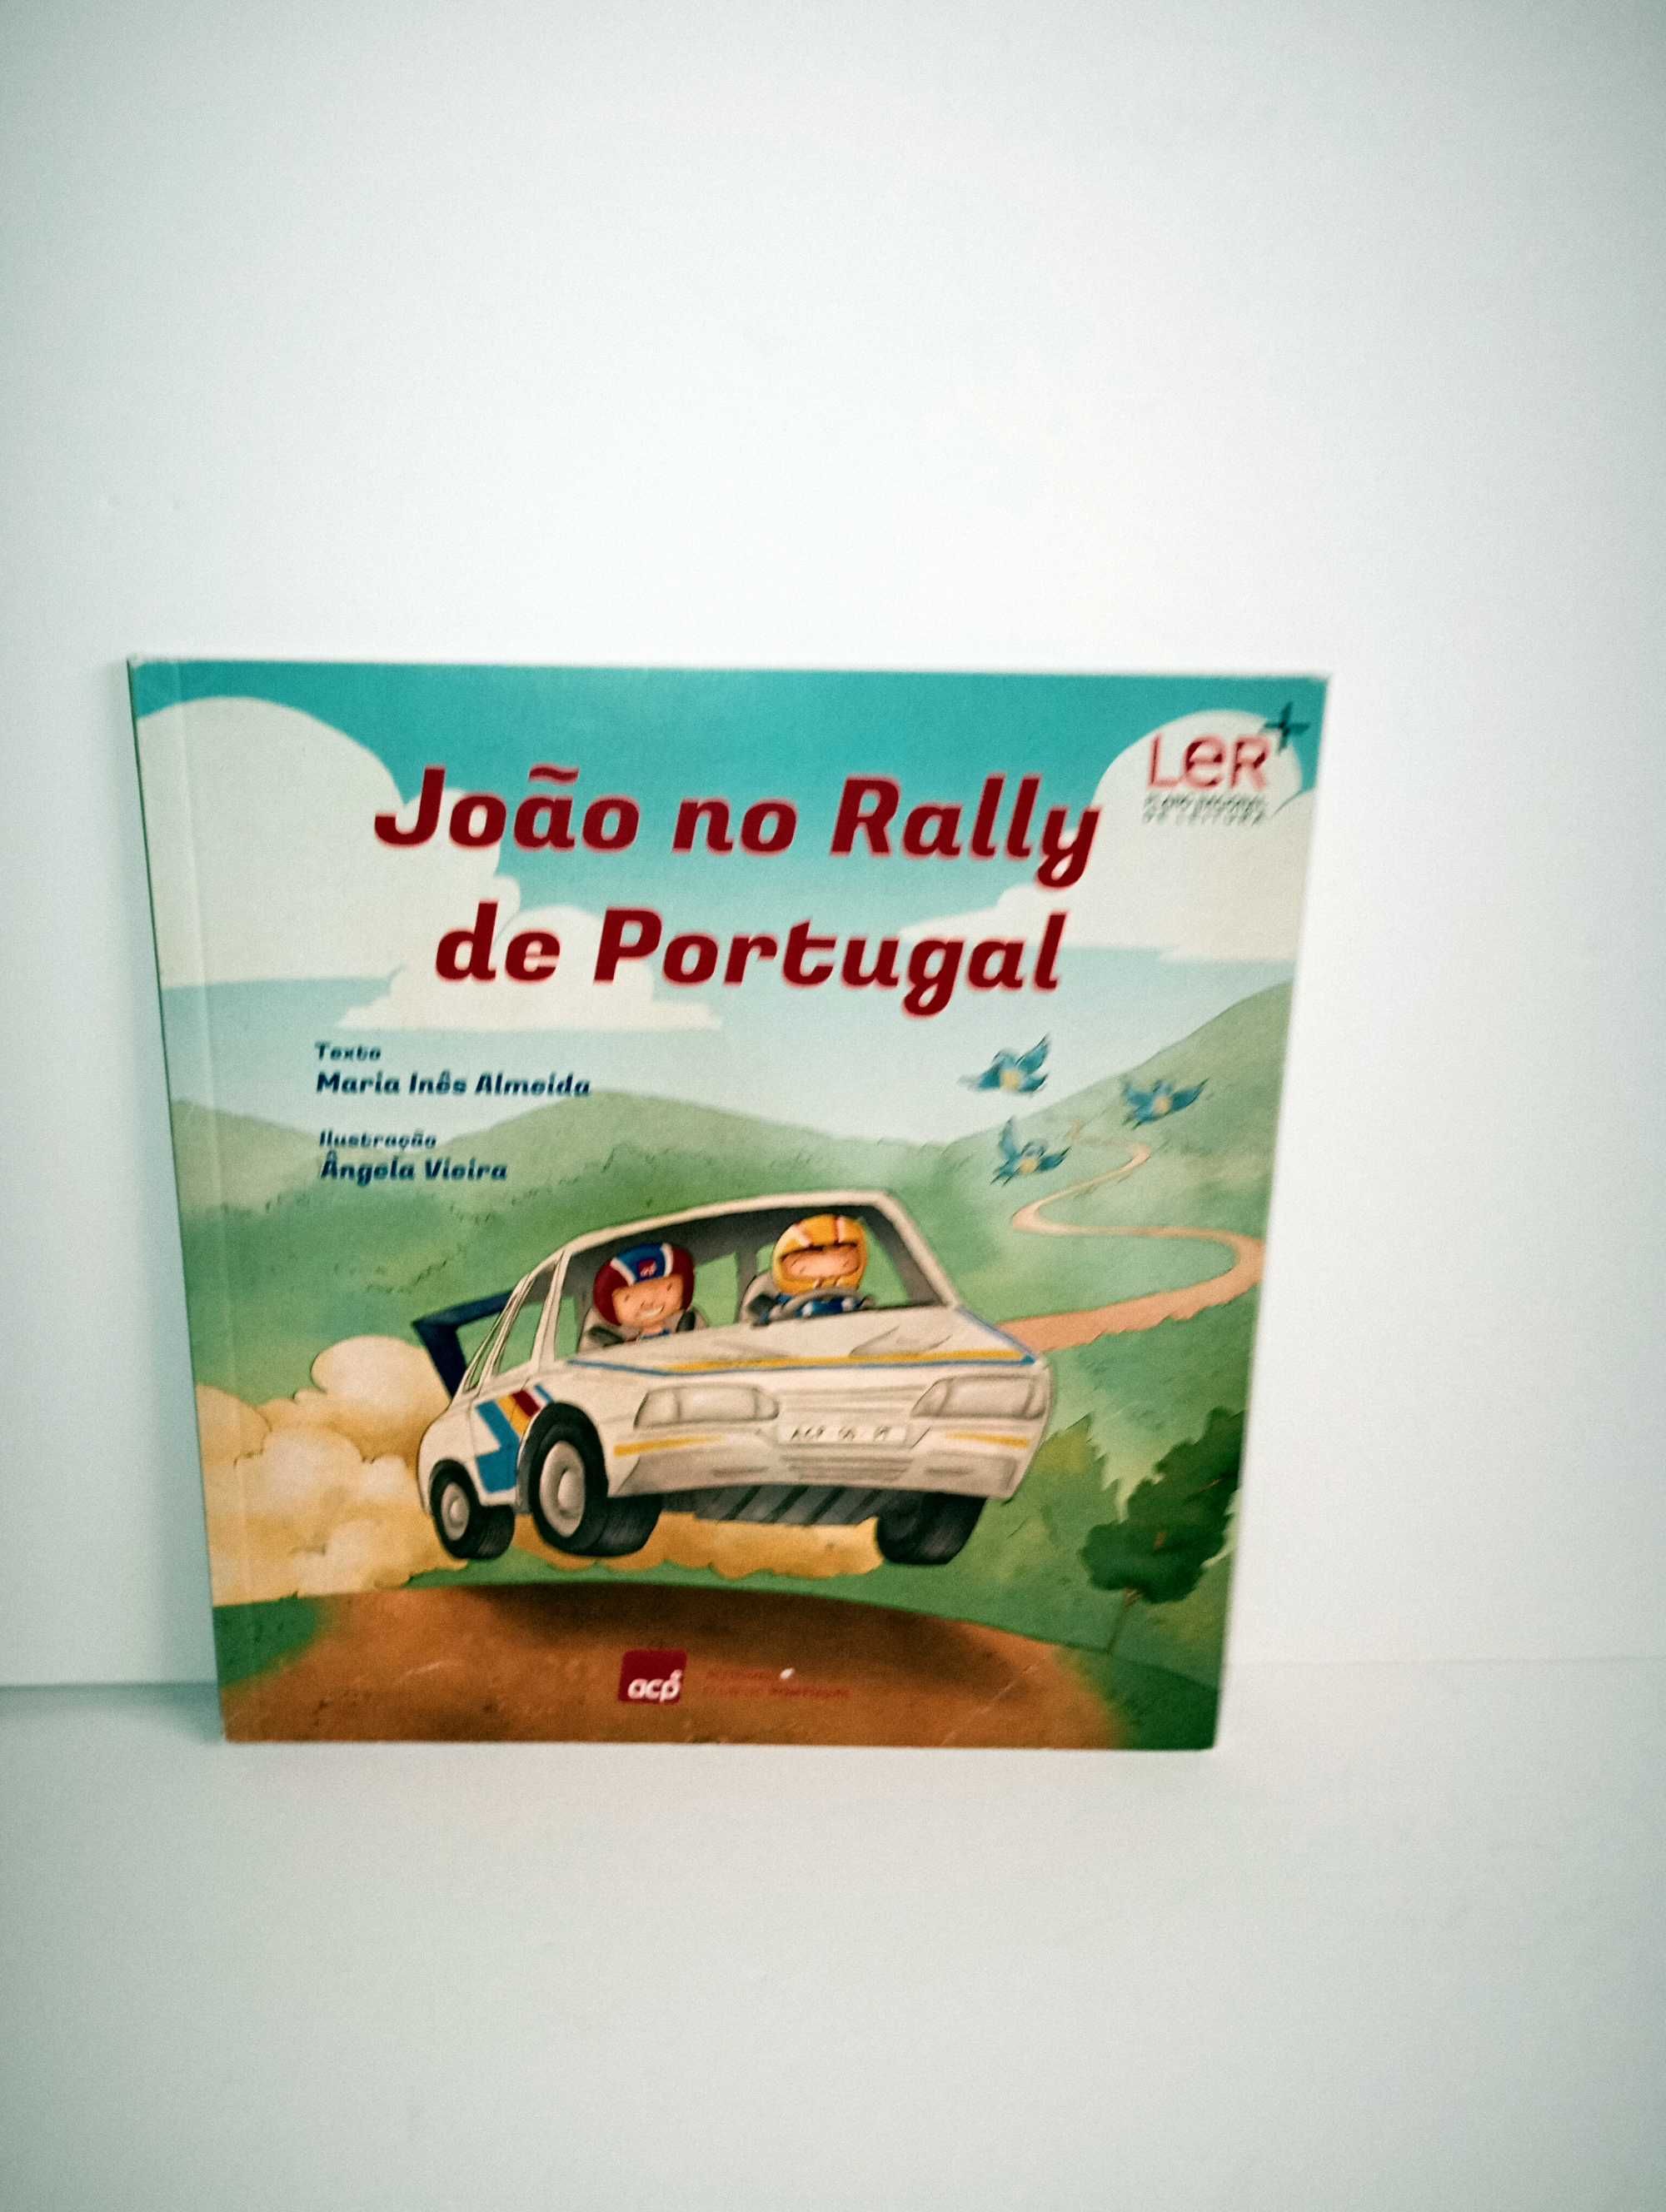 João no Rally de Portugal